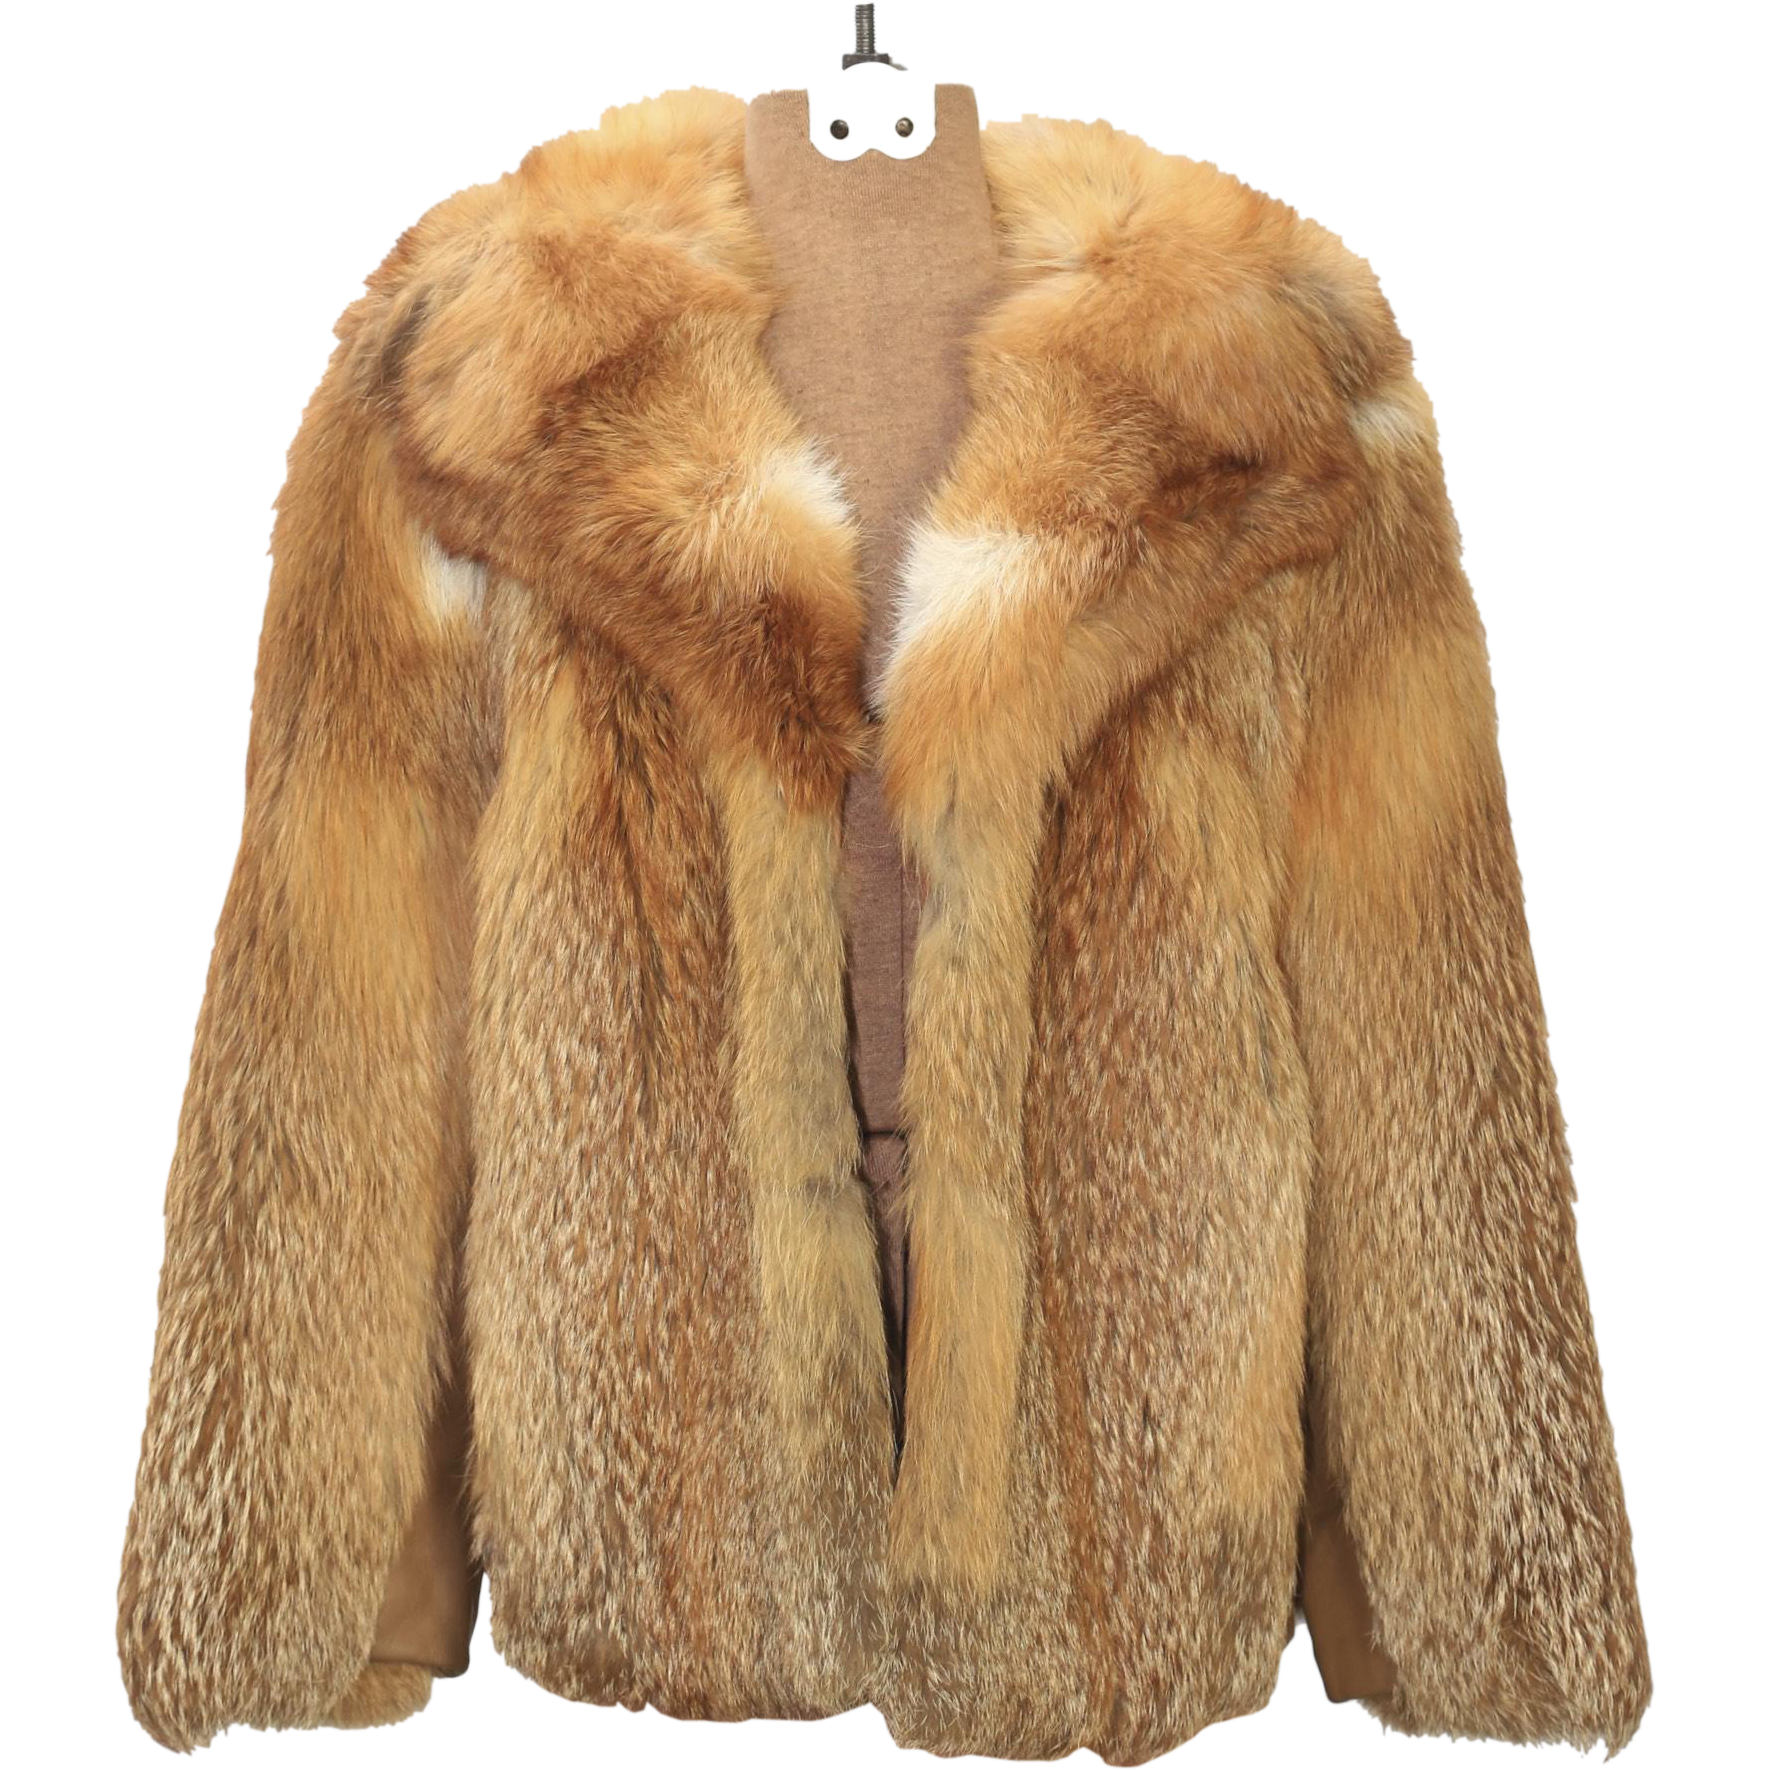 Fur Coat Background PNG Image